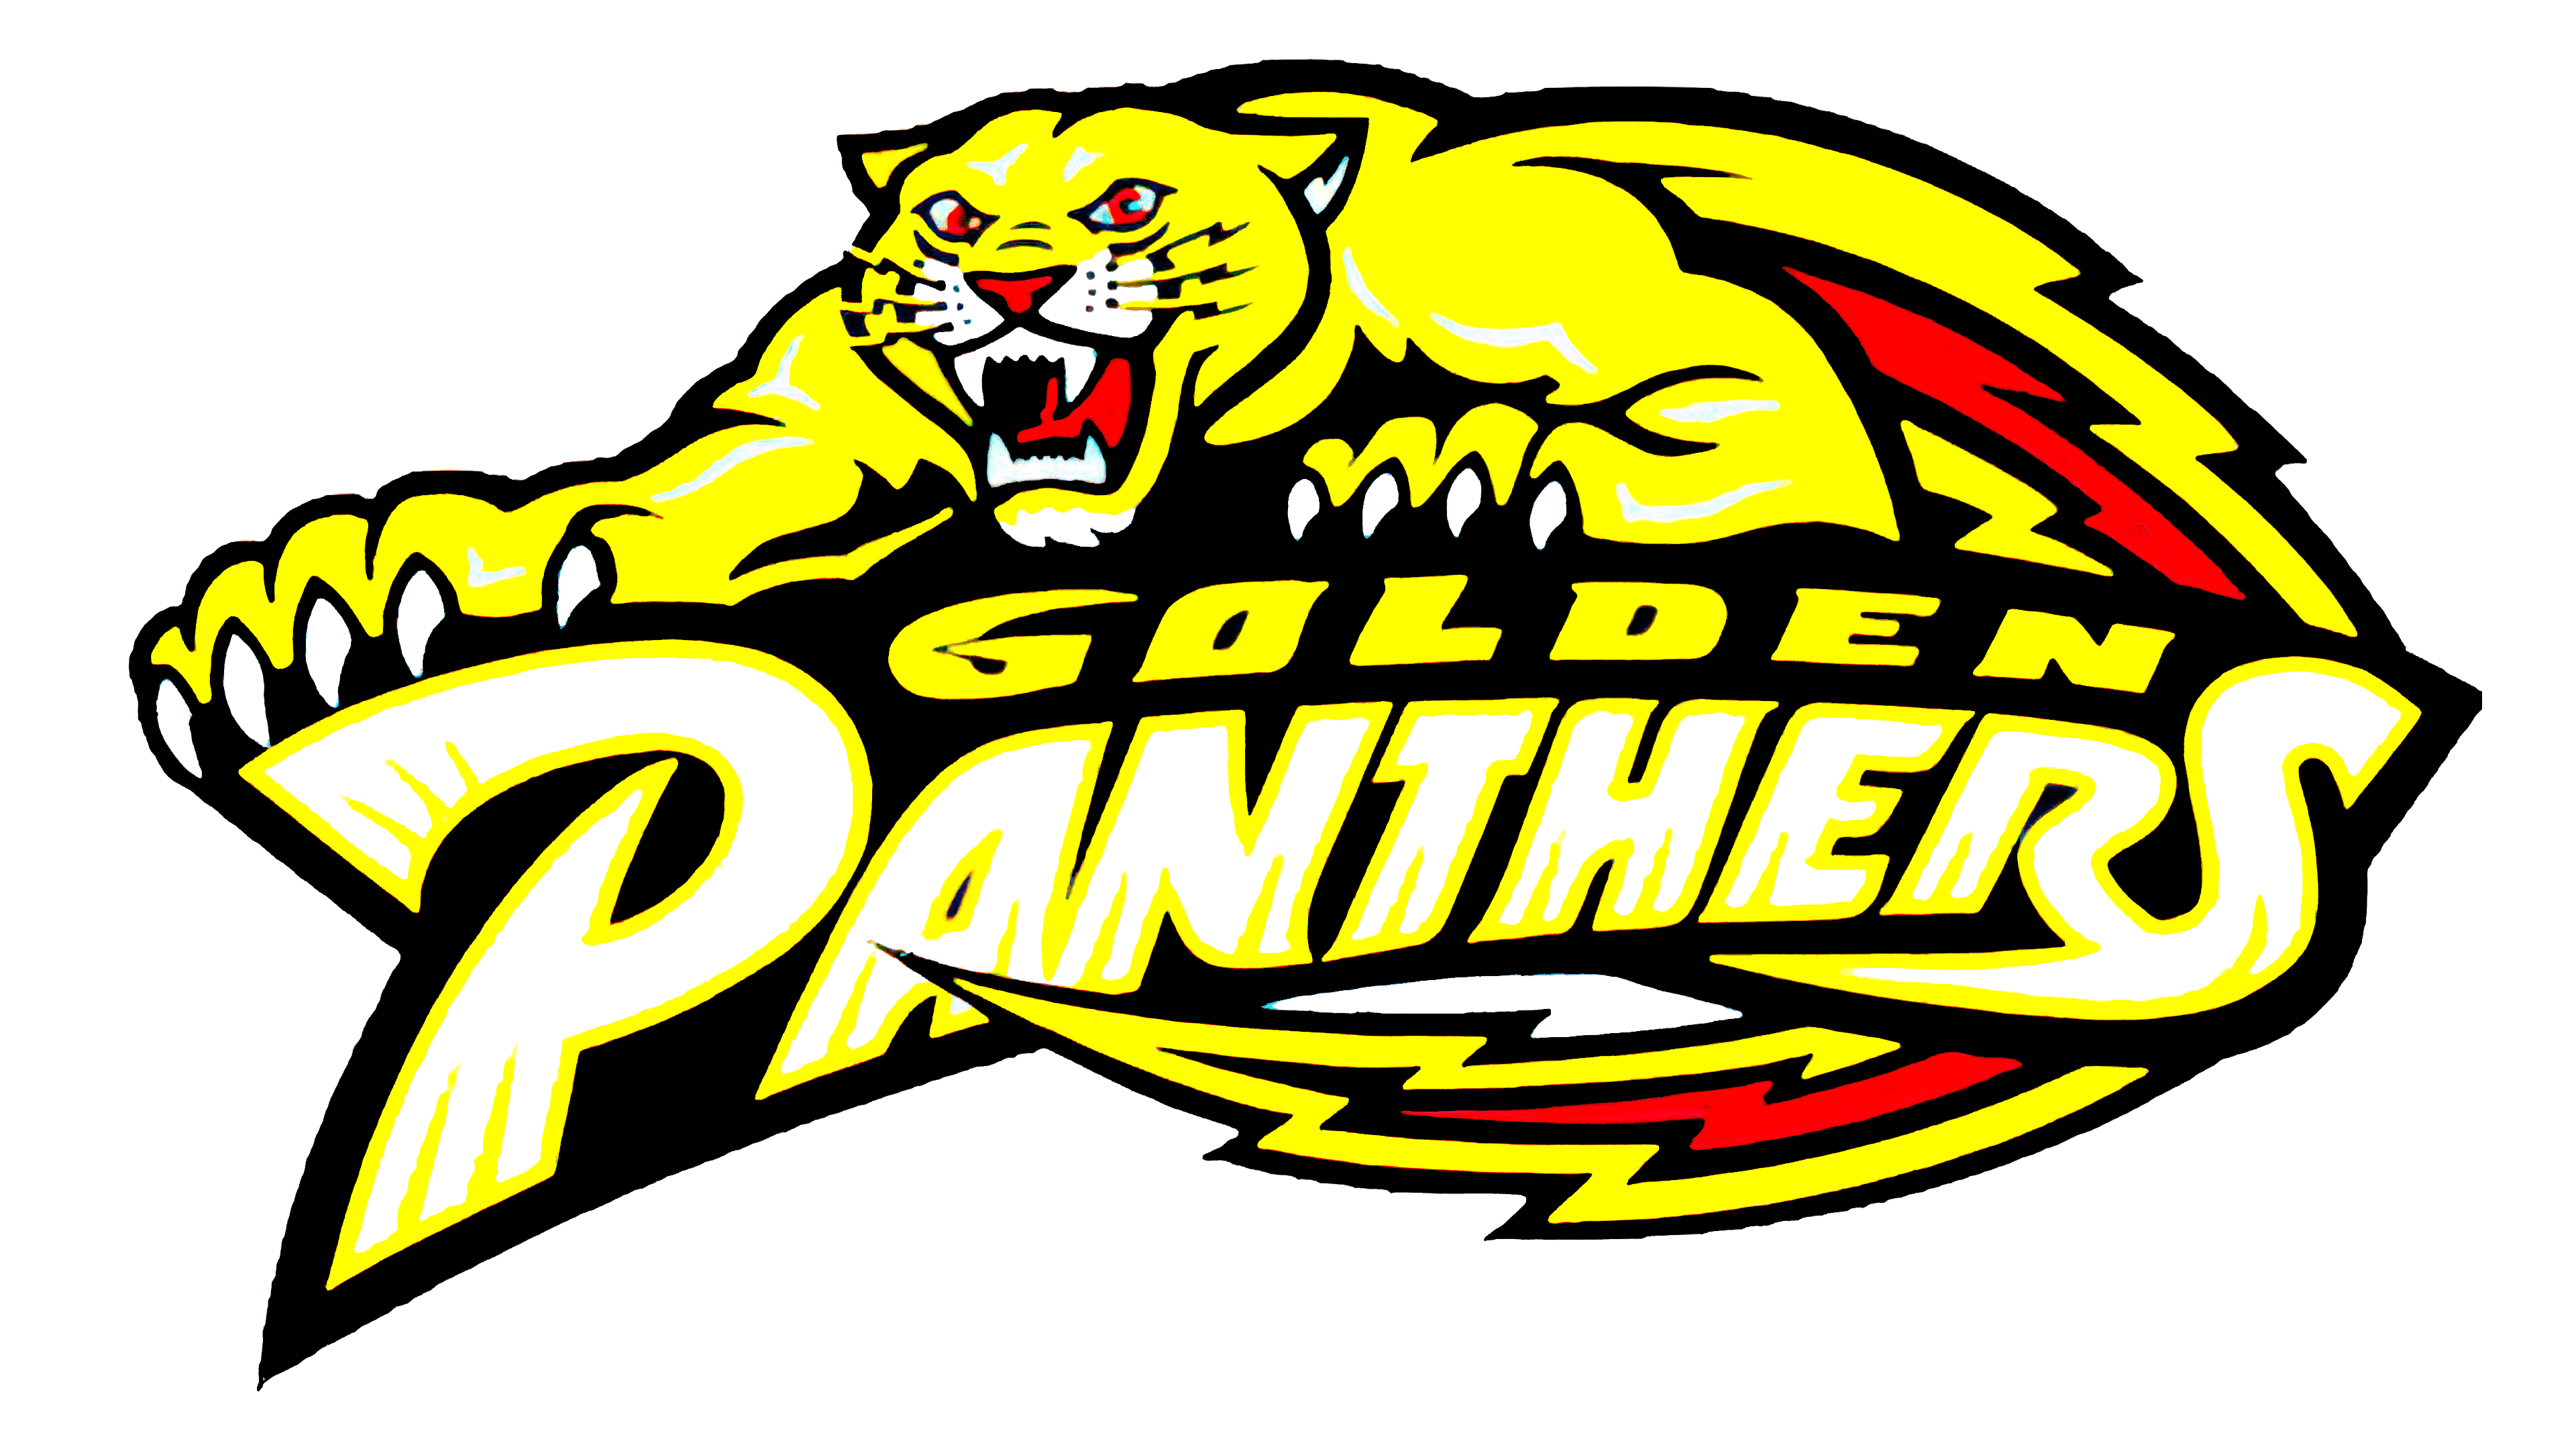 FIU Panthers Logo | Symbol, History, PNG (3840*2160)